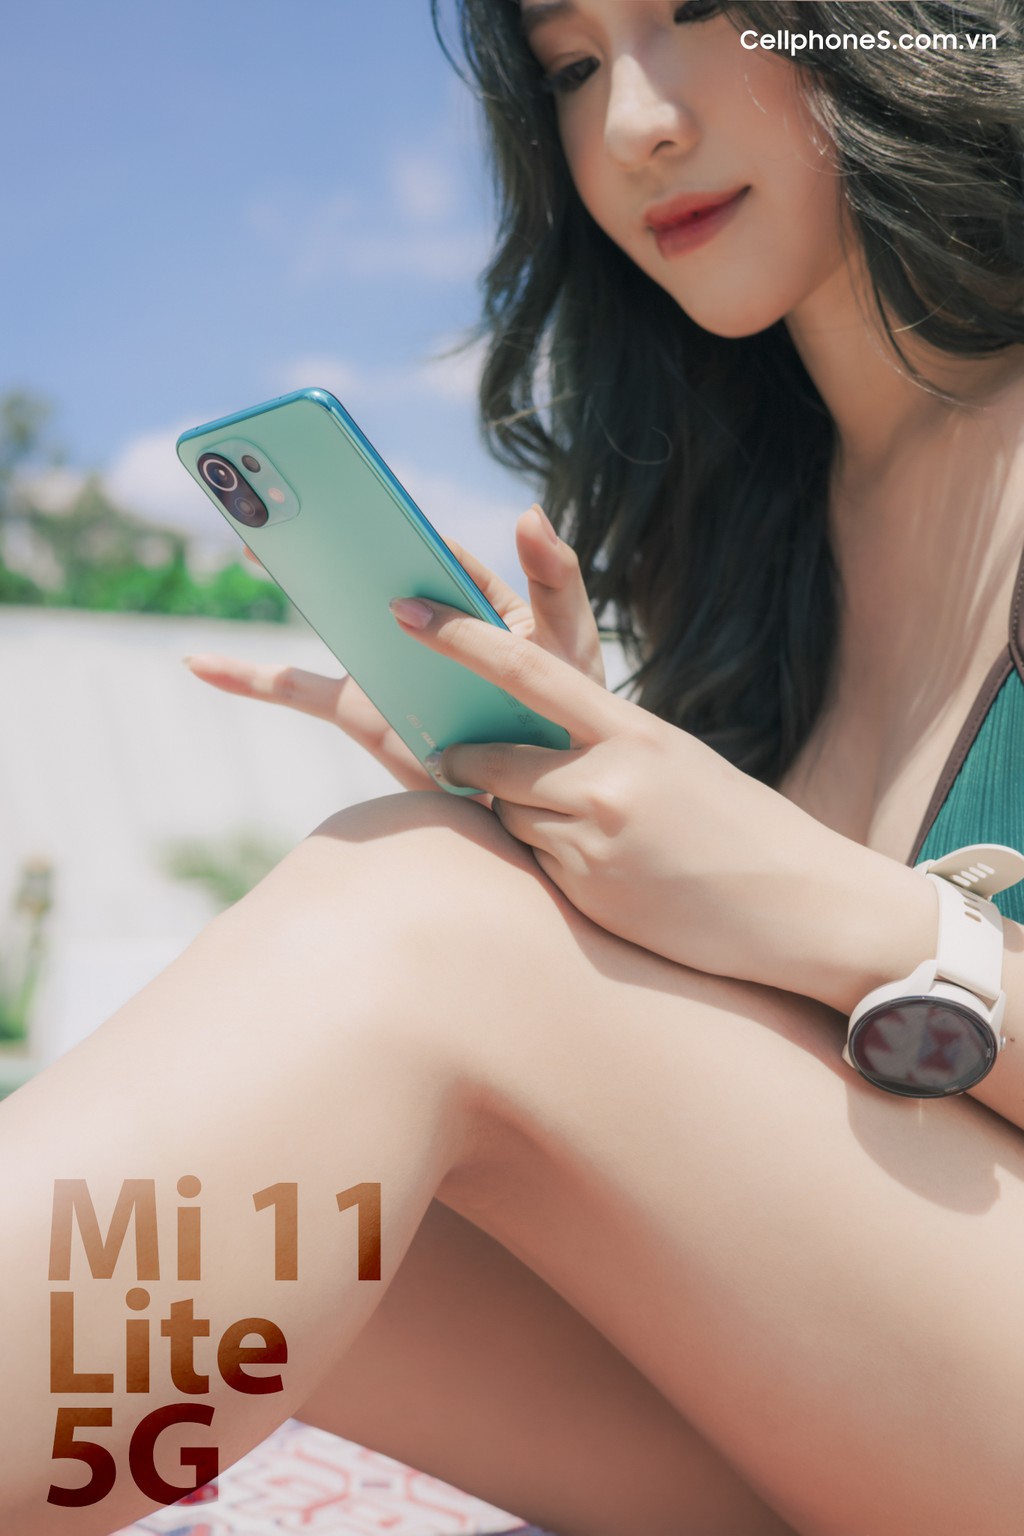 Mi 11 Lite 5G mở đặt trước, quà hơn 4 triệu, độc quyền CellphoneS ảnh 4